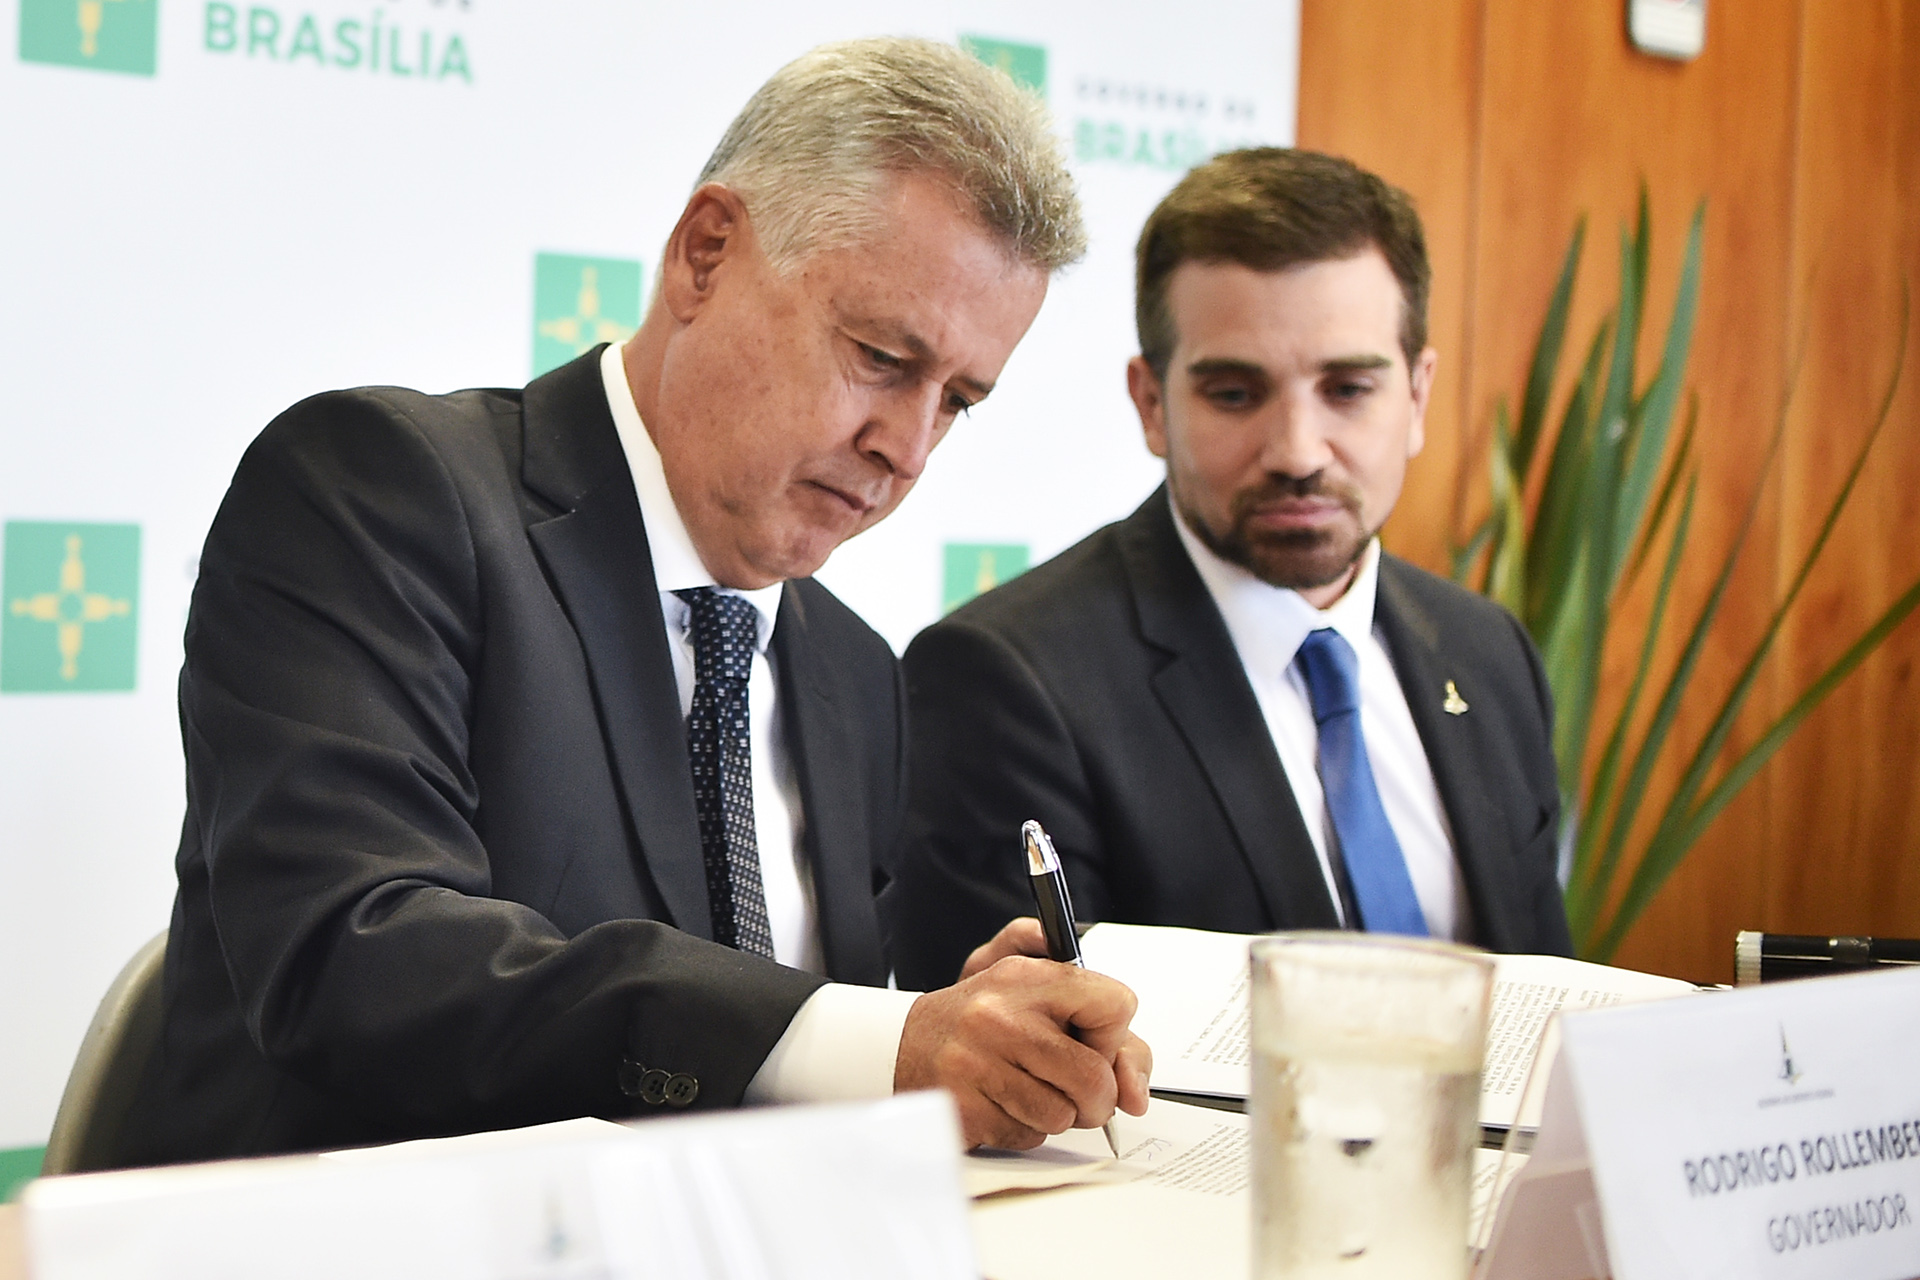 O governador de Brasília, Rodrigo Rollemberg, assinou a nomeação acompanhado do secretário de Saúde, Humberto Fonseca, em cerimônia na manhã desta quarta-feira (9), no Palácio do Buriti.